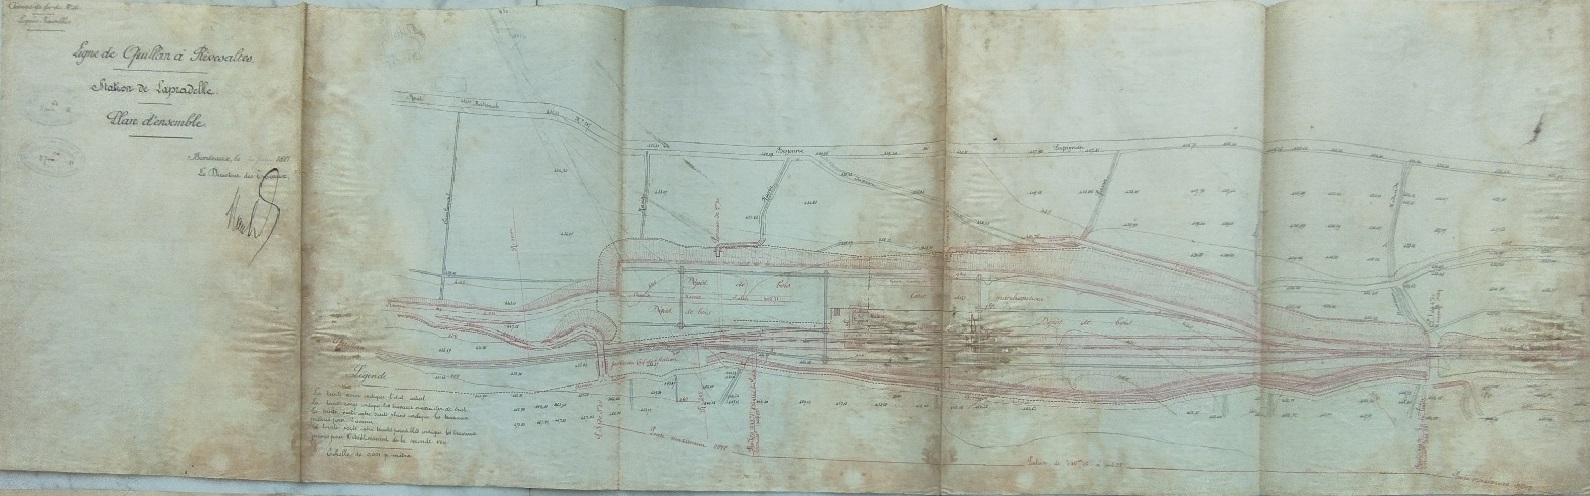 plan gare du 02 juin 1881 - général